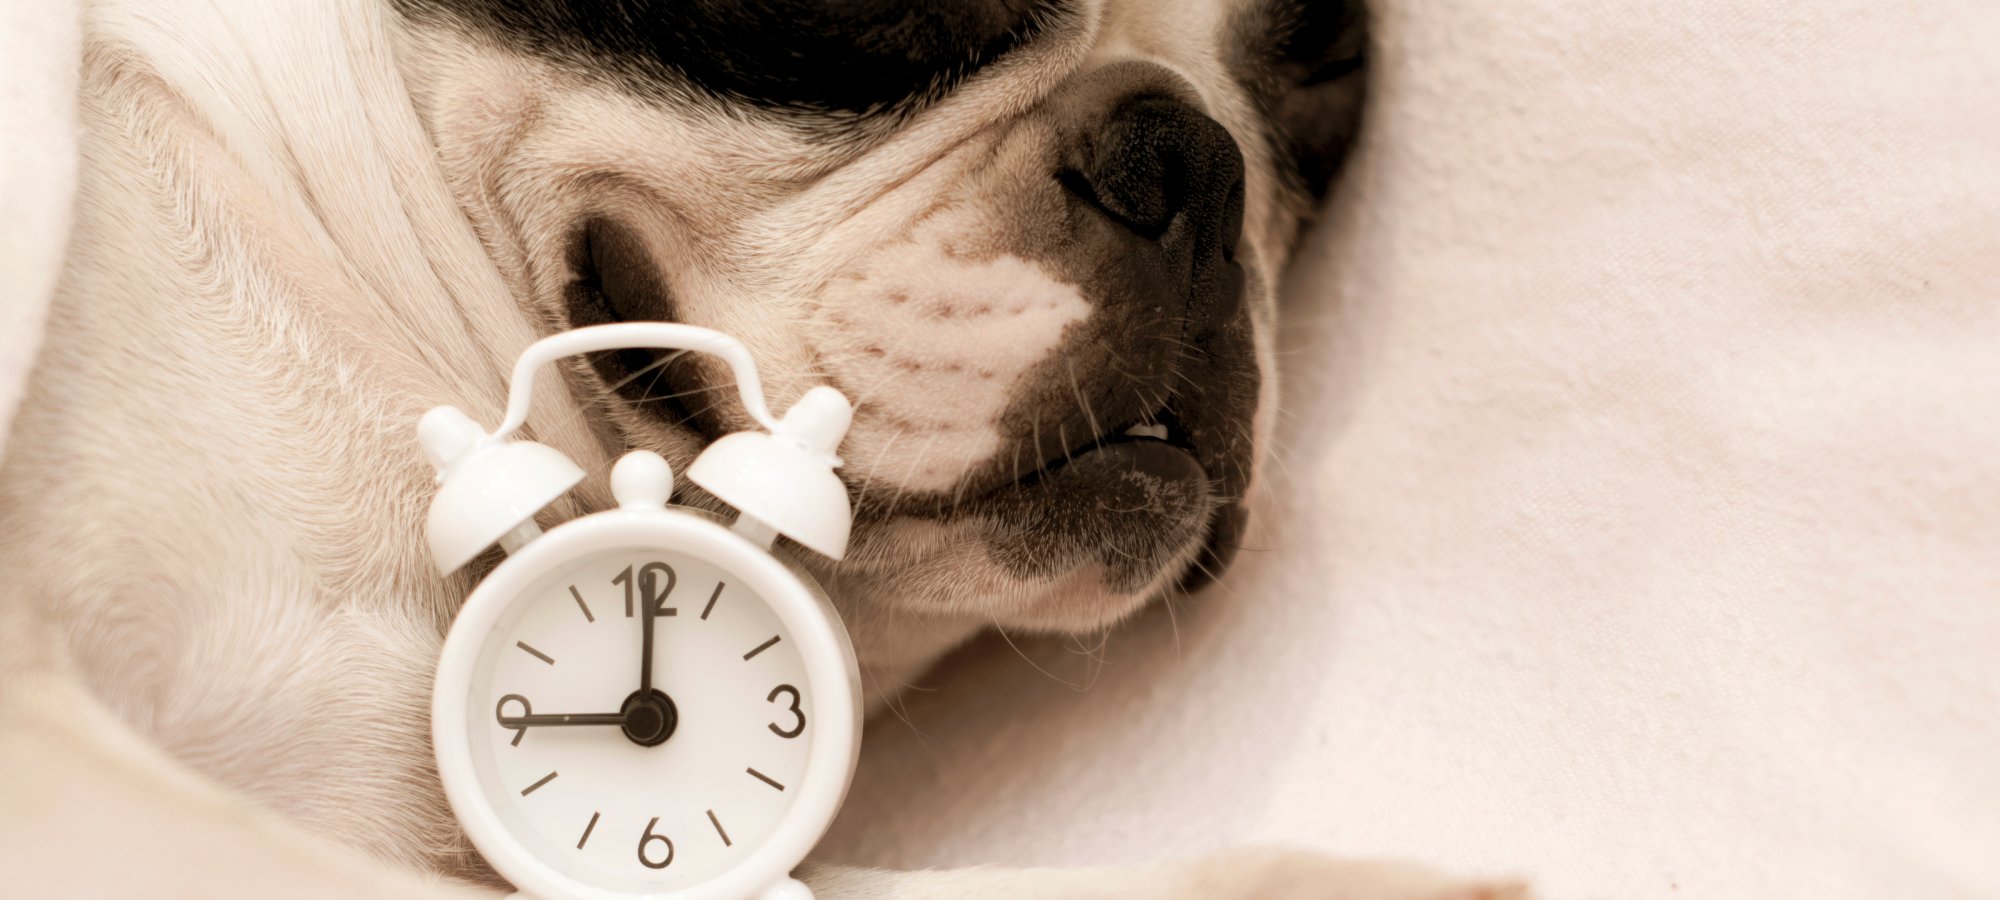 dog sleeping with alarm clock